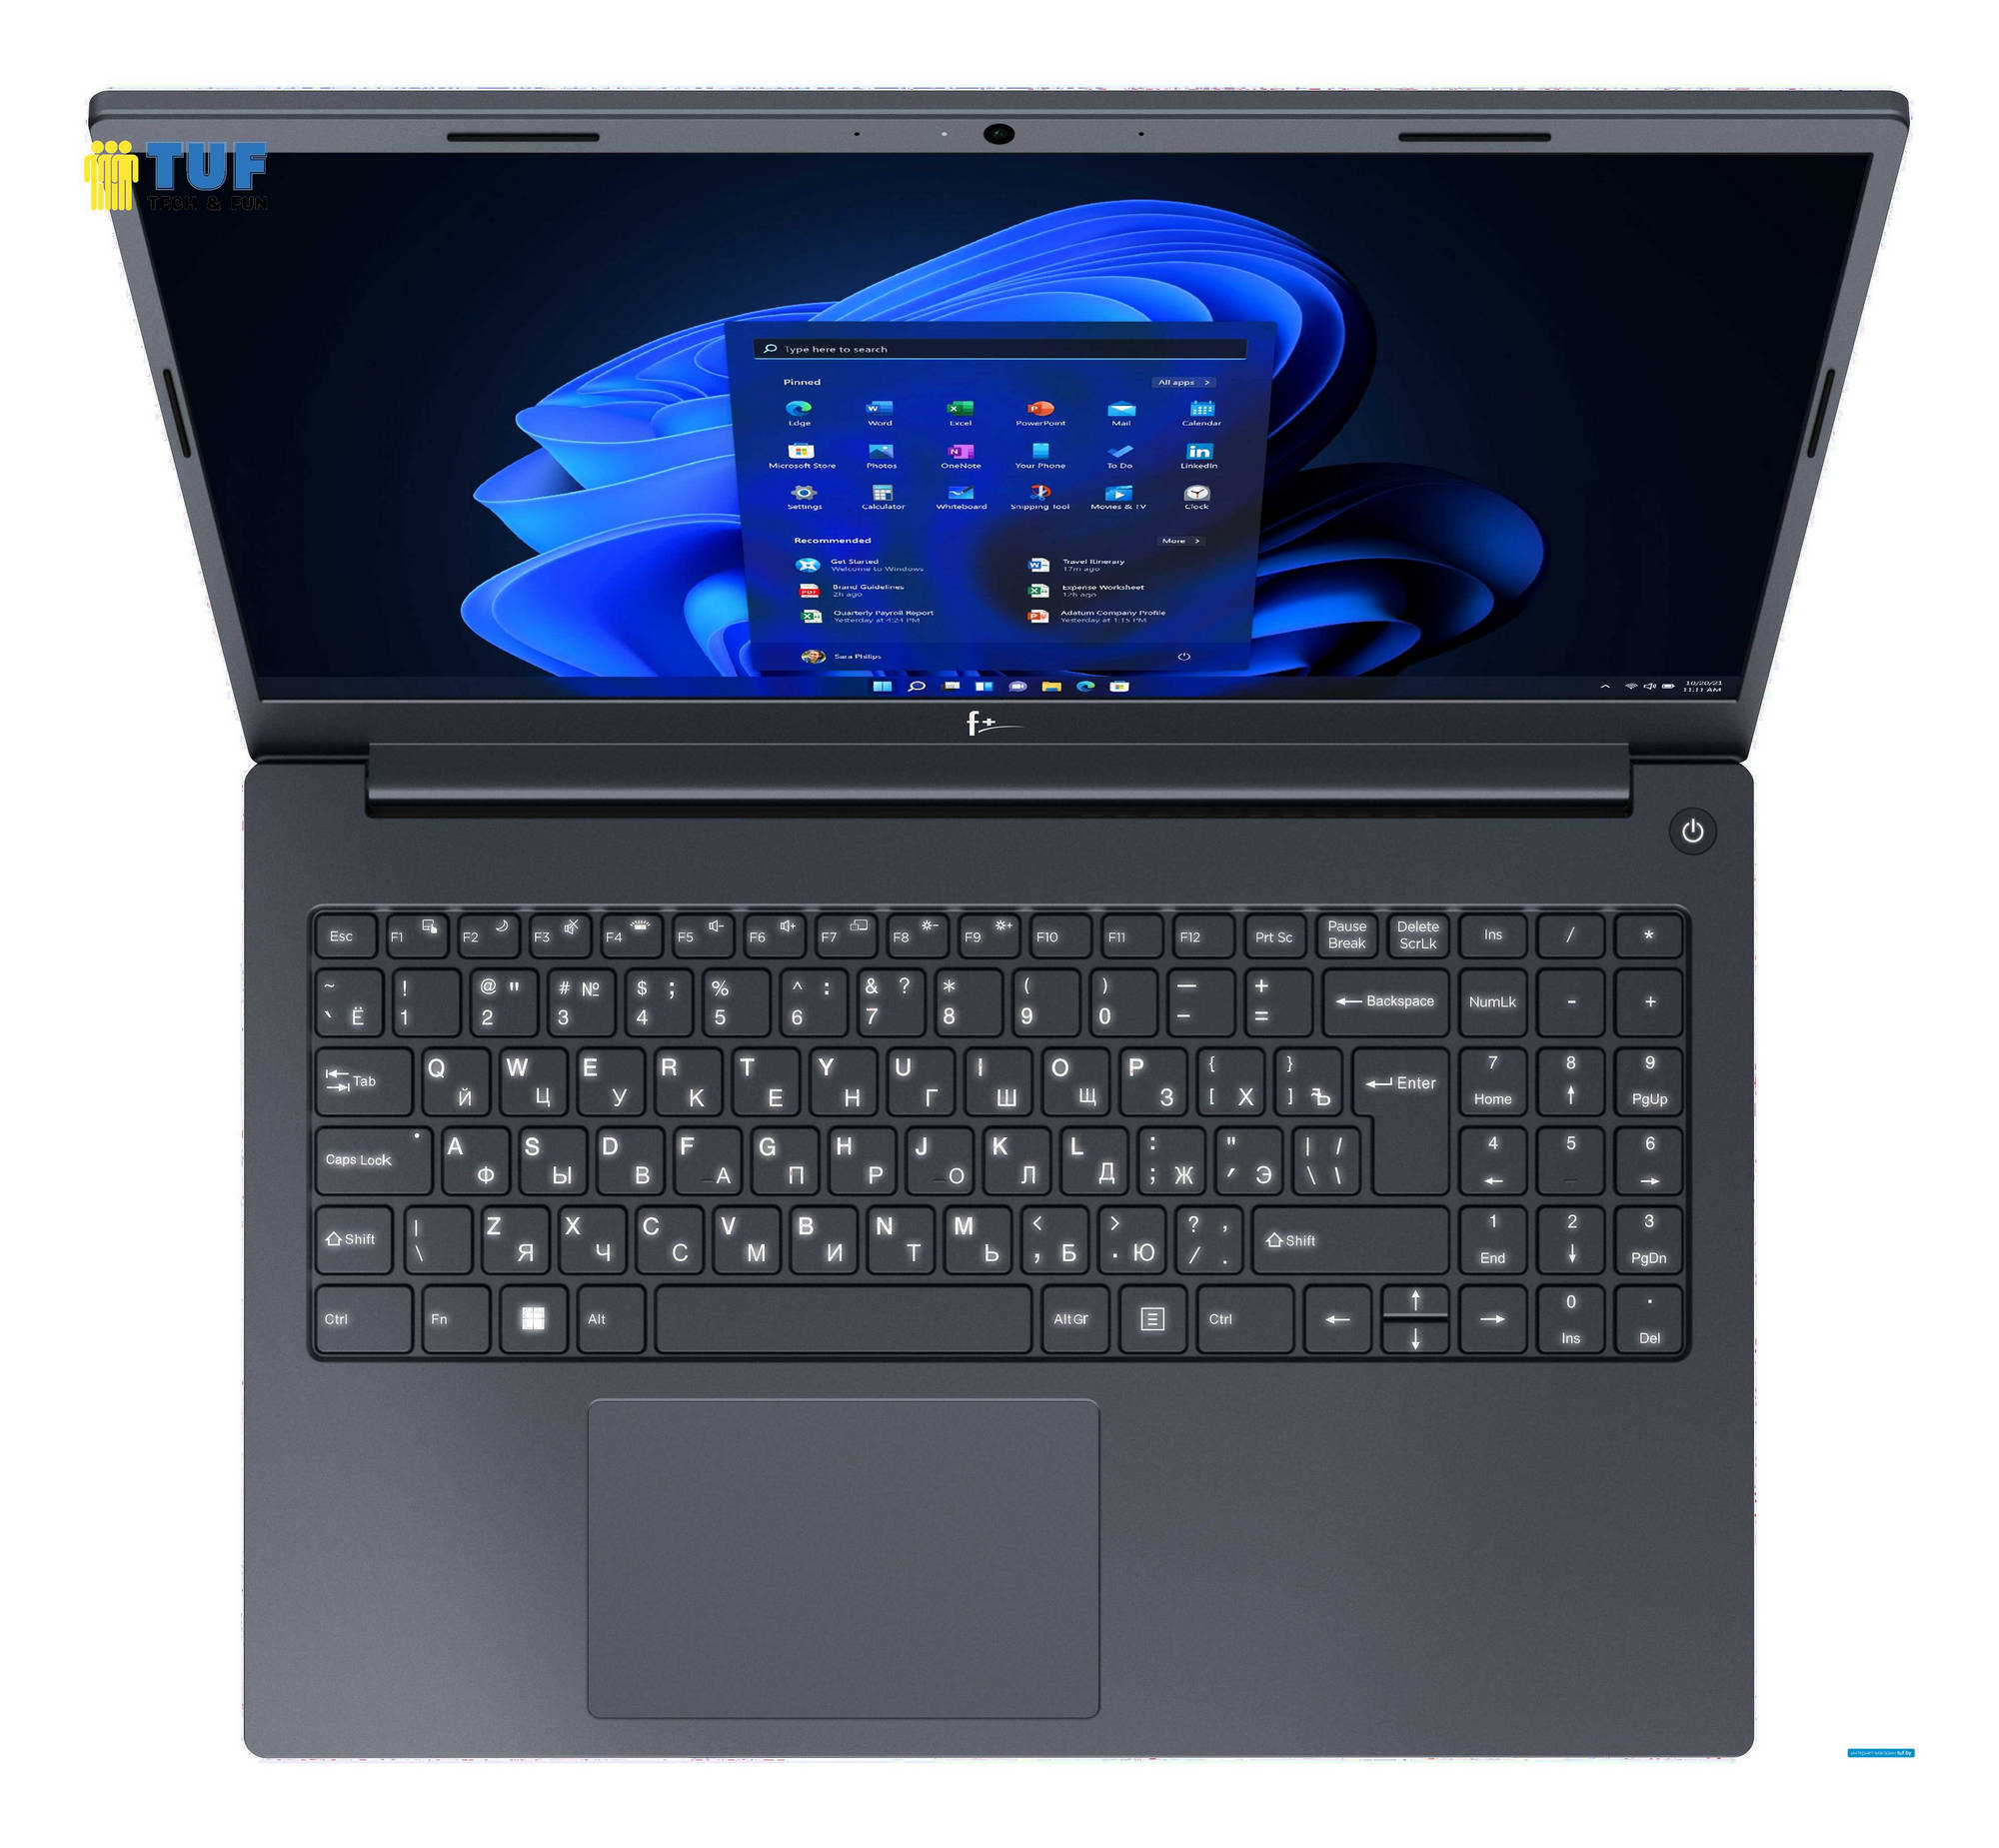 Ноутбук F+ Flaptop I FLTP-5i5-8256-w